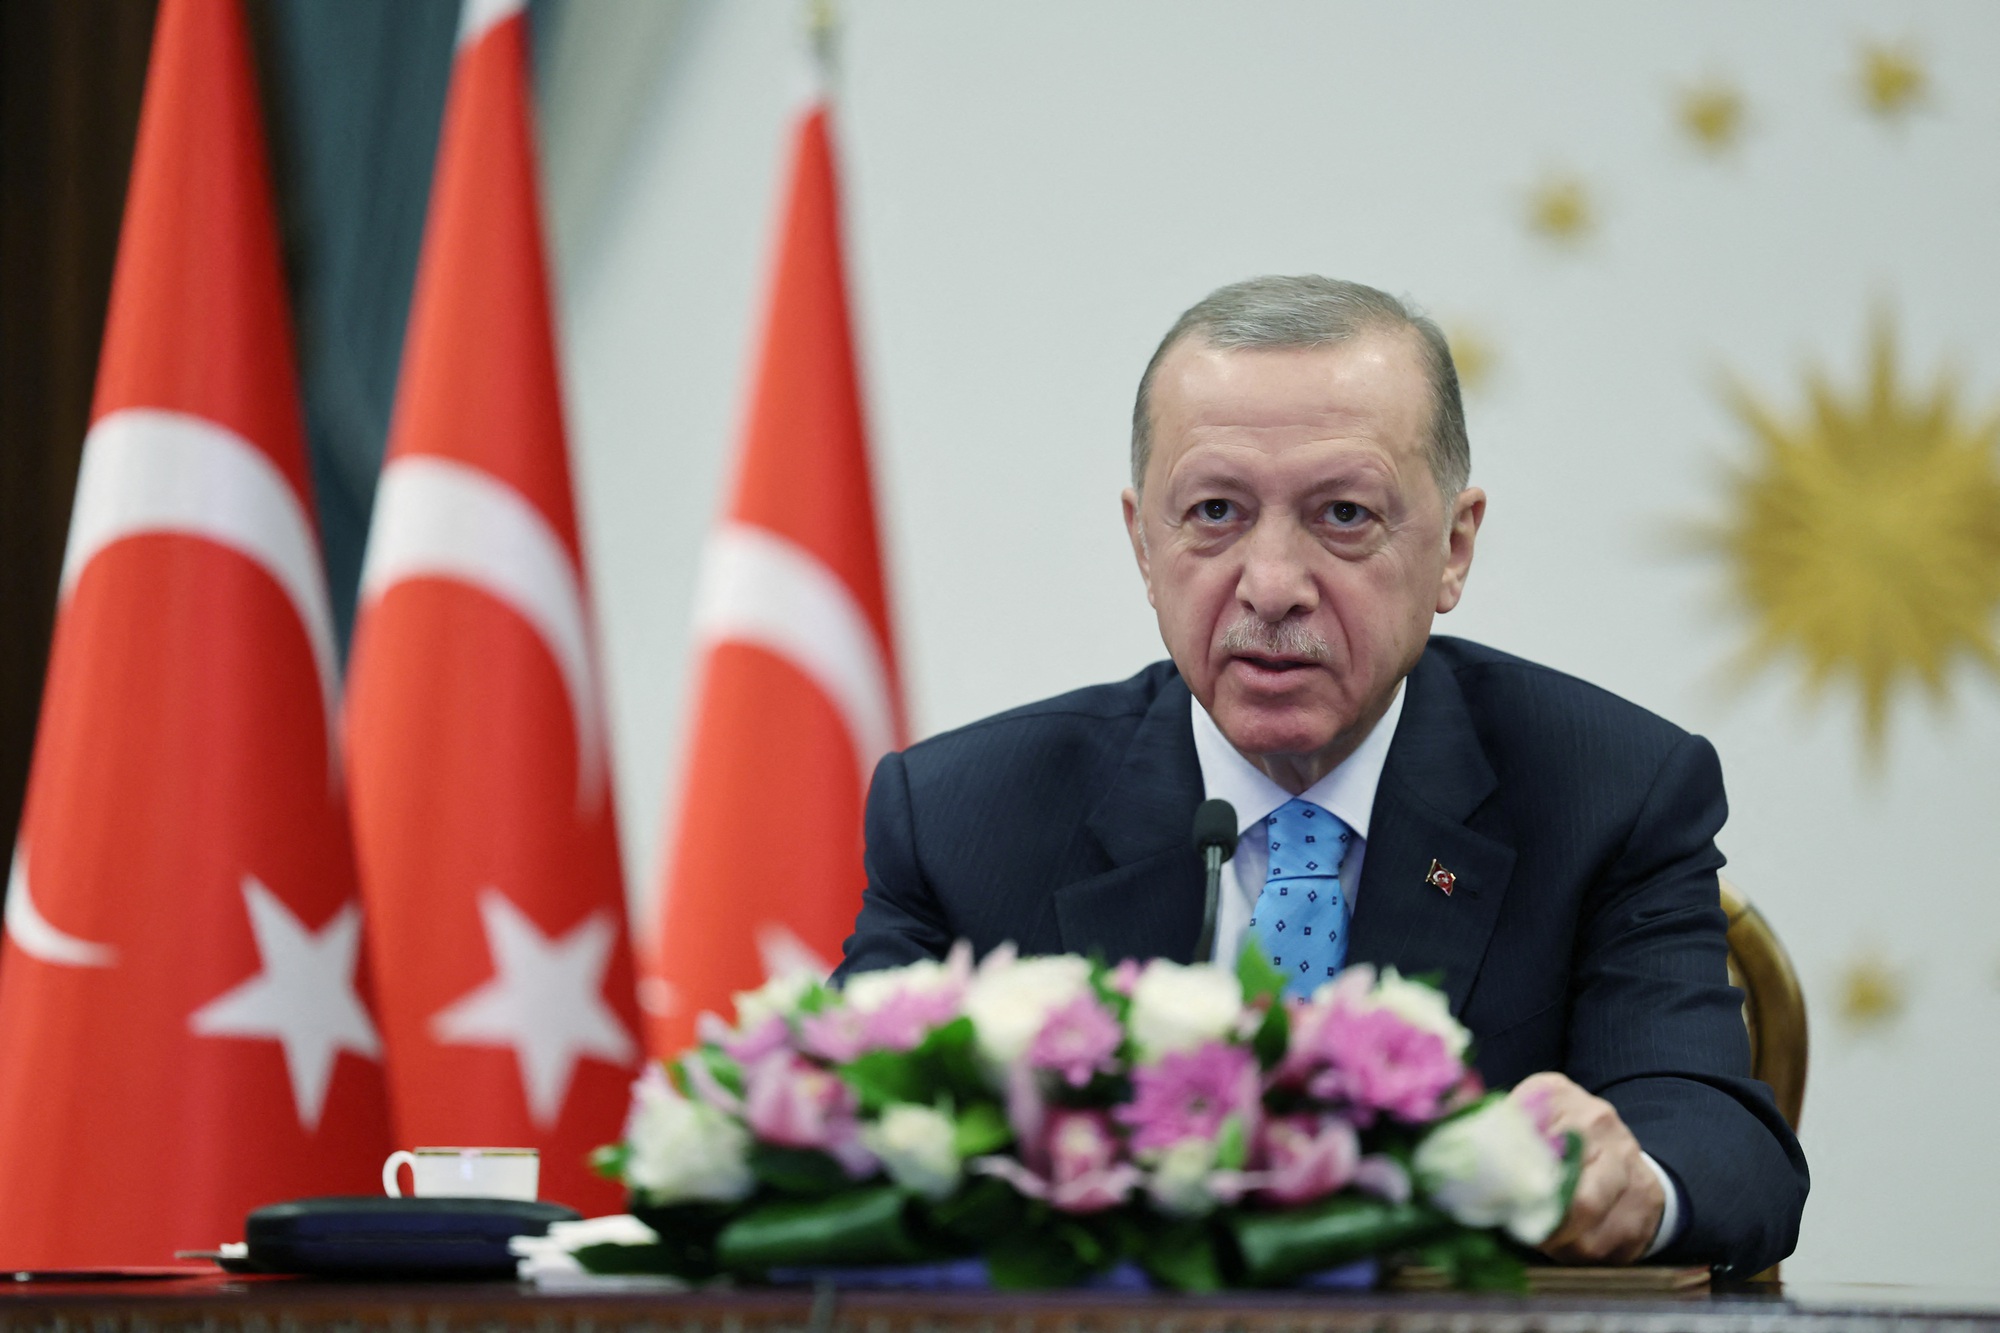 Thổ Nhĩ Kỳ hi vọng có thể khôi phục thỏa thuận ngũ cốc Biển Đen